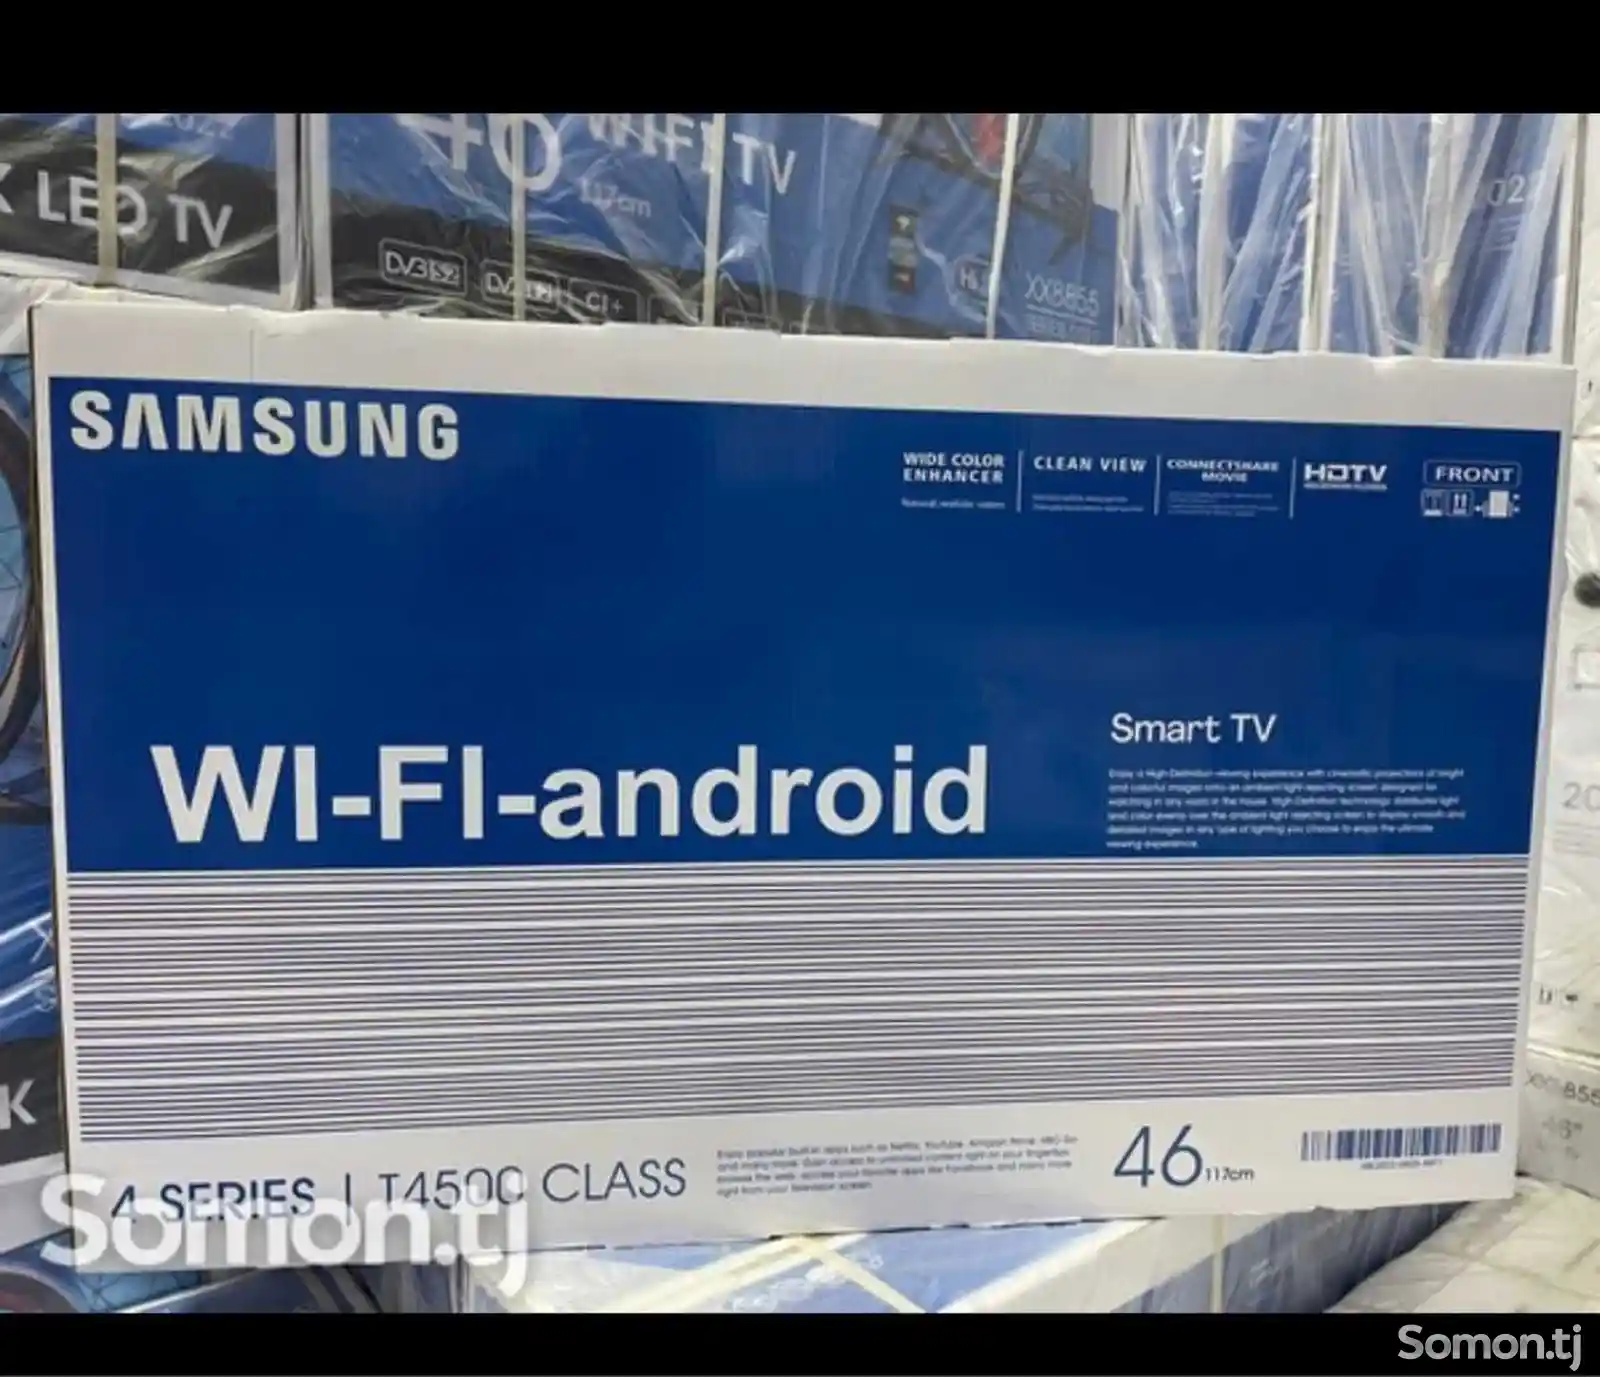 Телевизор Samsung 46 Wifi